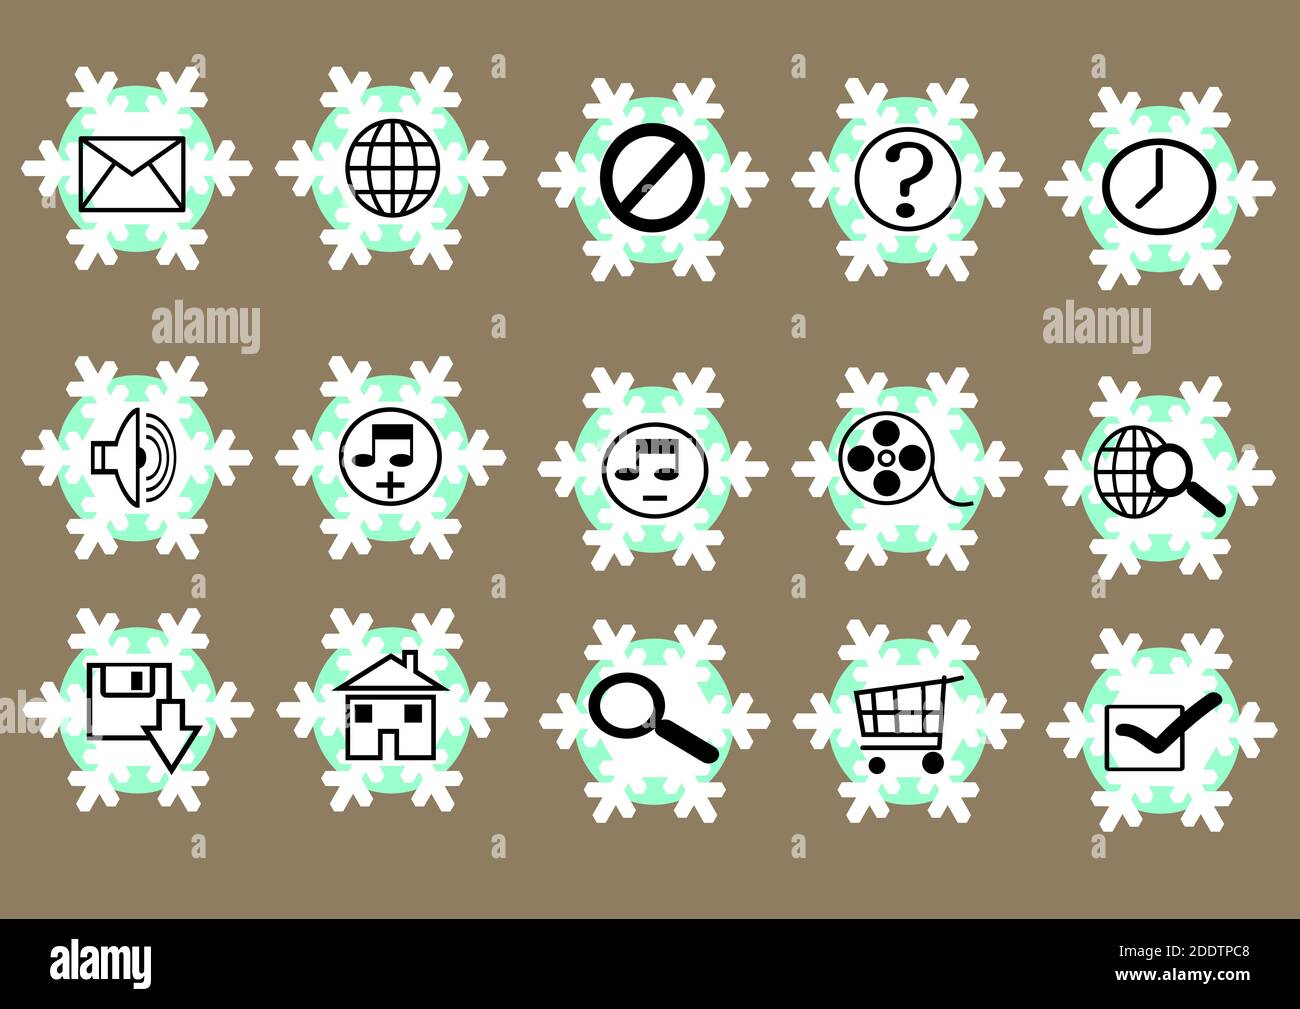 Web icon set in blue and white snowflakes button, various icon set Stock Photo